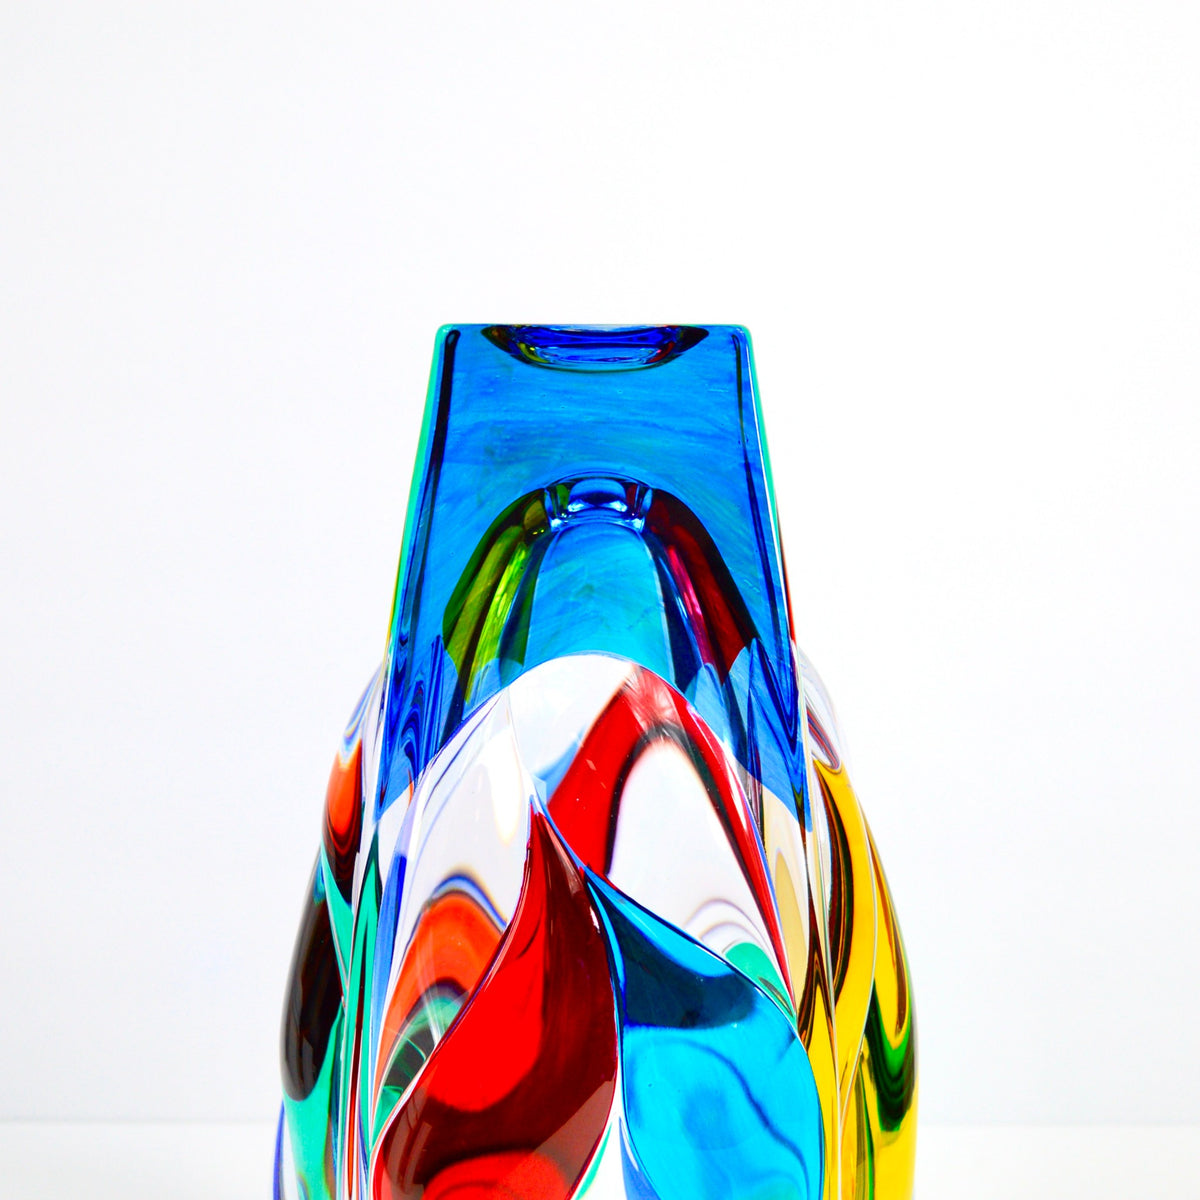 Jazz Vase, Hand Painted Italian Crystal, Made in Italy - My Italian Decor